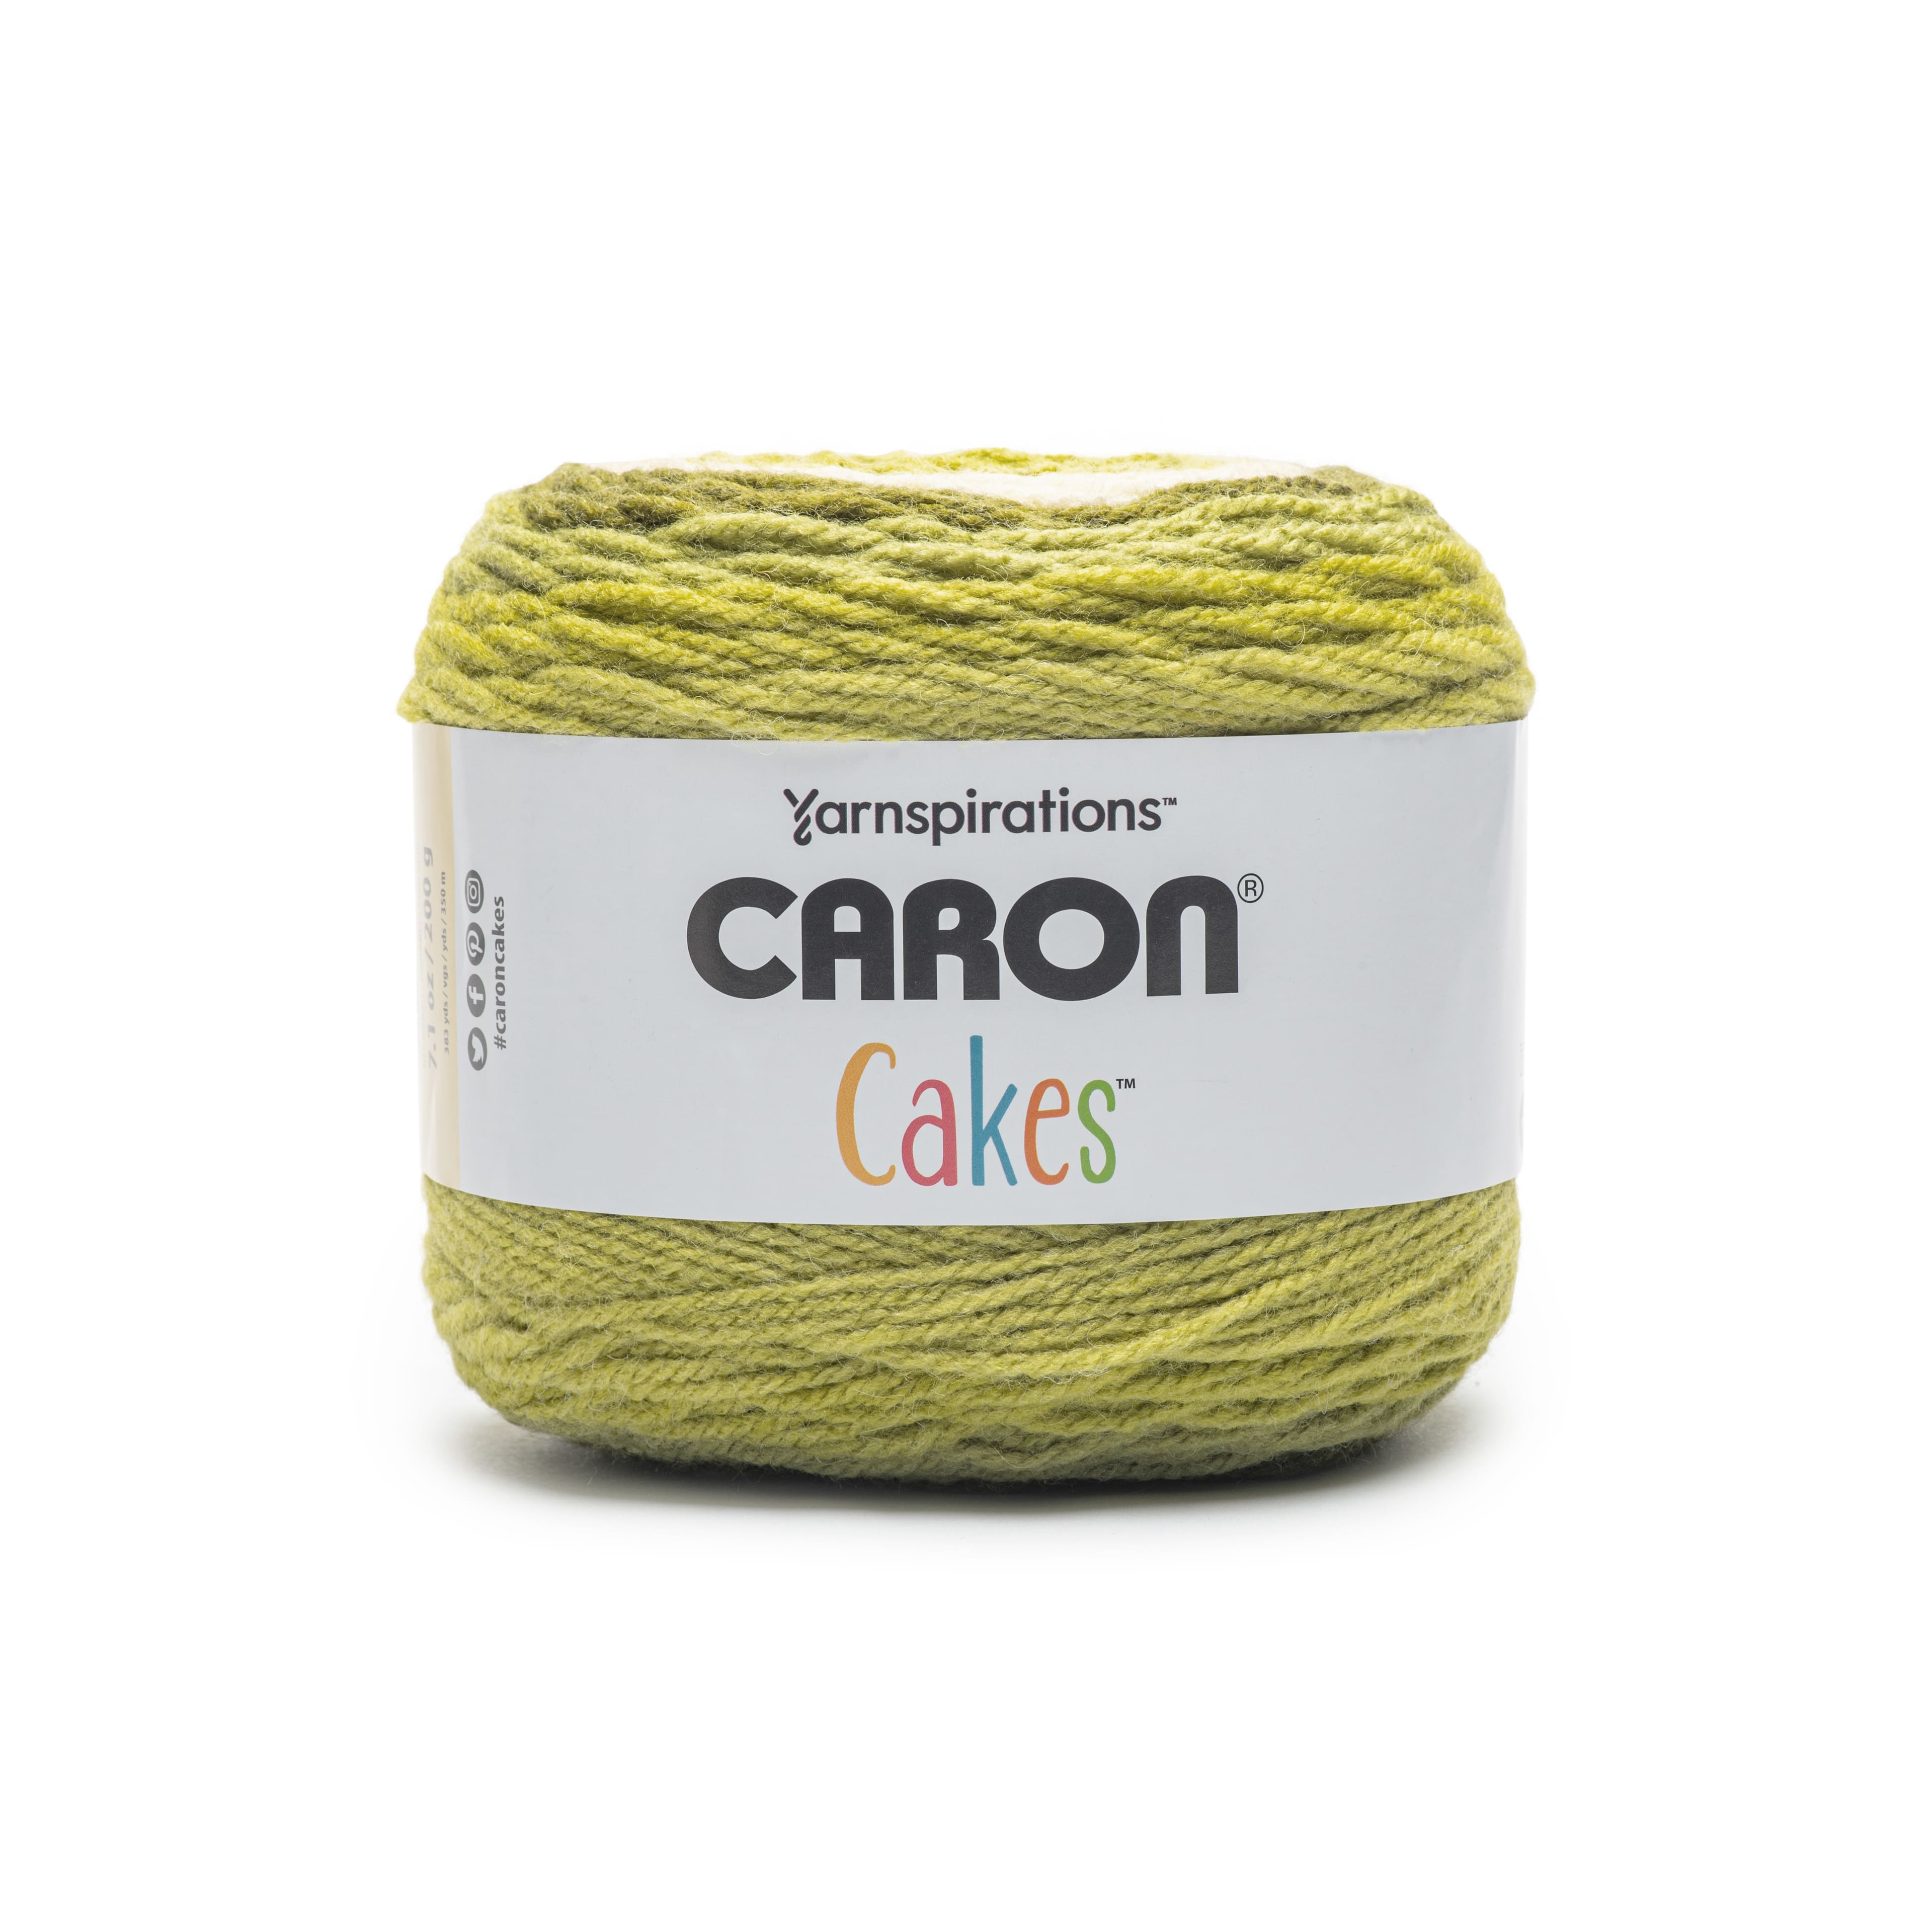  Caron Cakes Self Striping Yarn 383 yd/350 m 7.1 oz/200